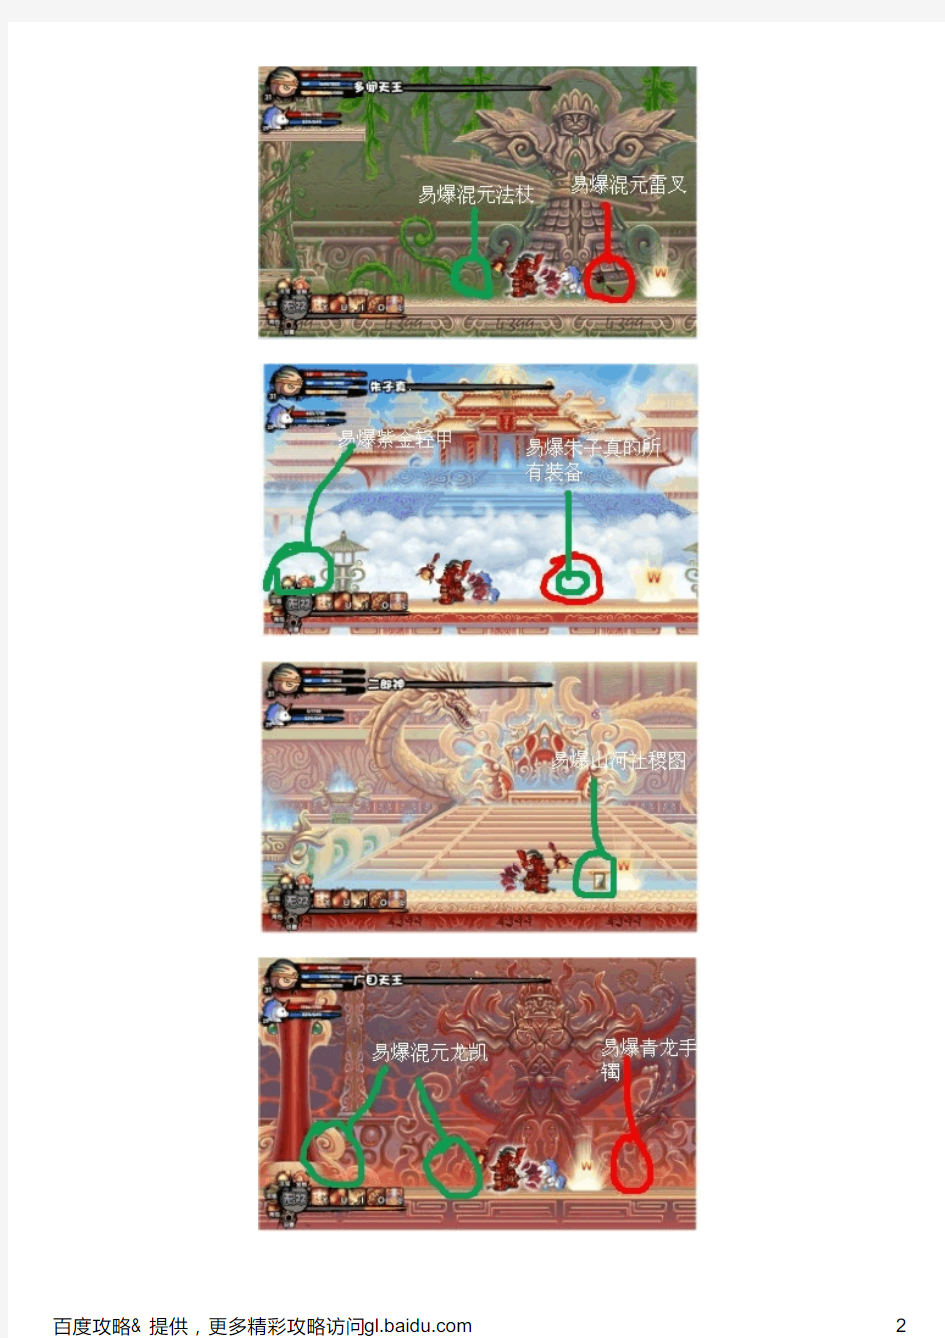 造梦西游3装备易爆点详细位置展示(图)